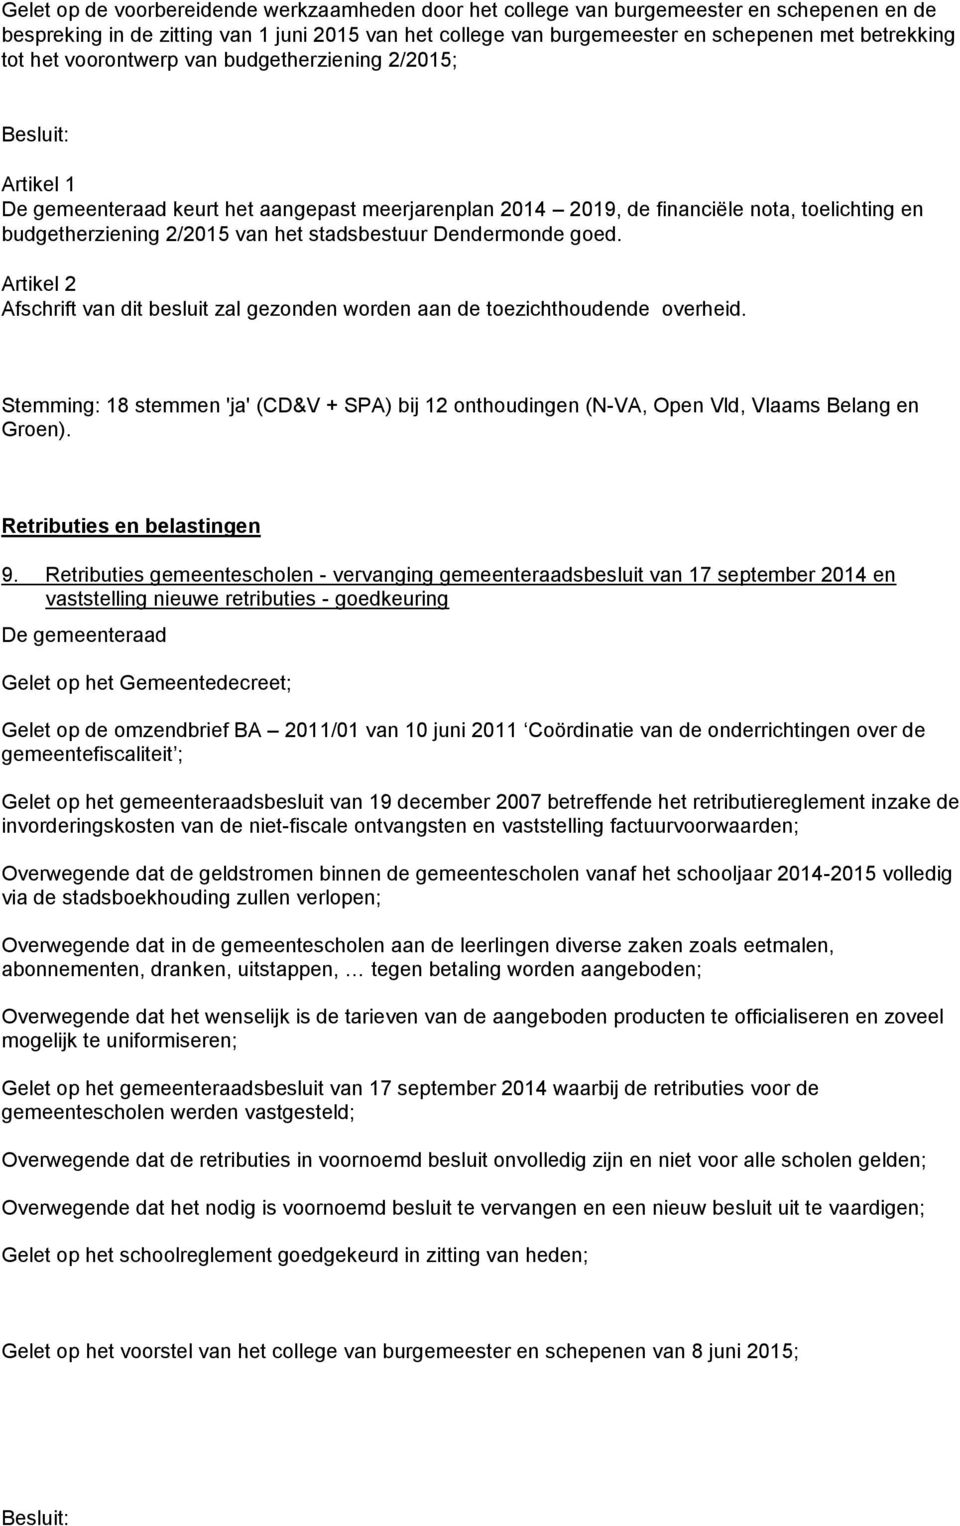 stadsbestuur Dendermonde goed. Artikel 2 Afschrift van dit besluit zal gezonden worden aan de toezichthoudende overheid.